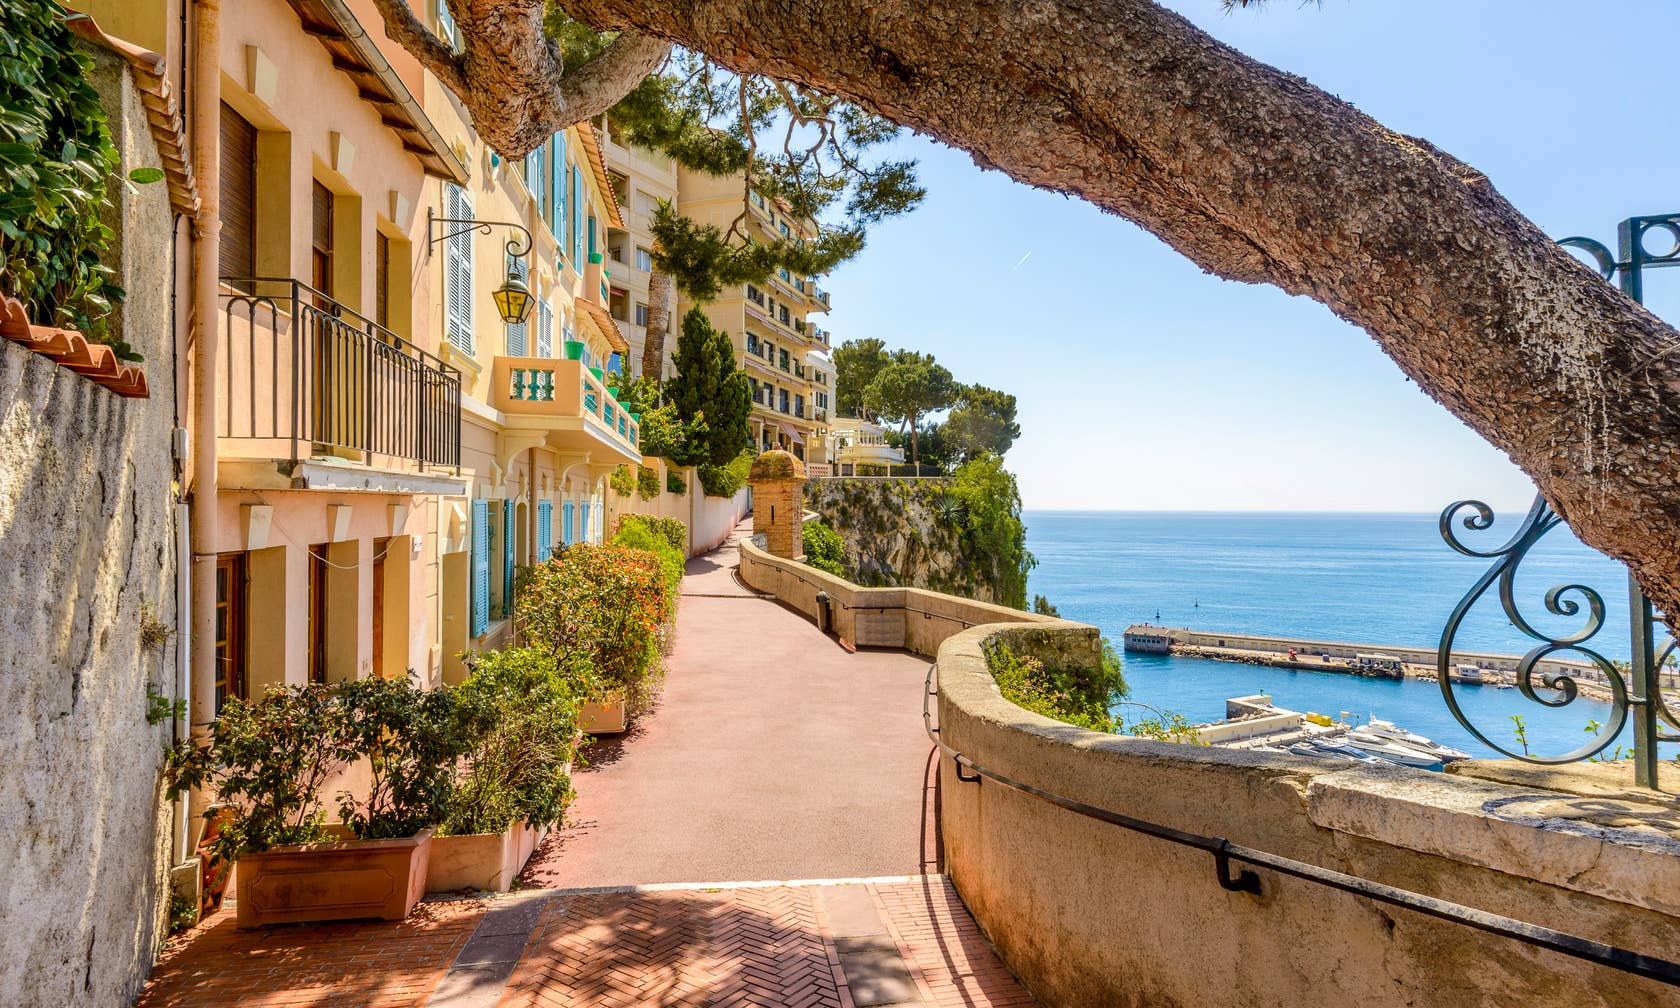 Bérbeadó nyaralók itt: Monaco